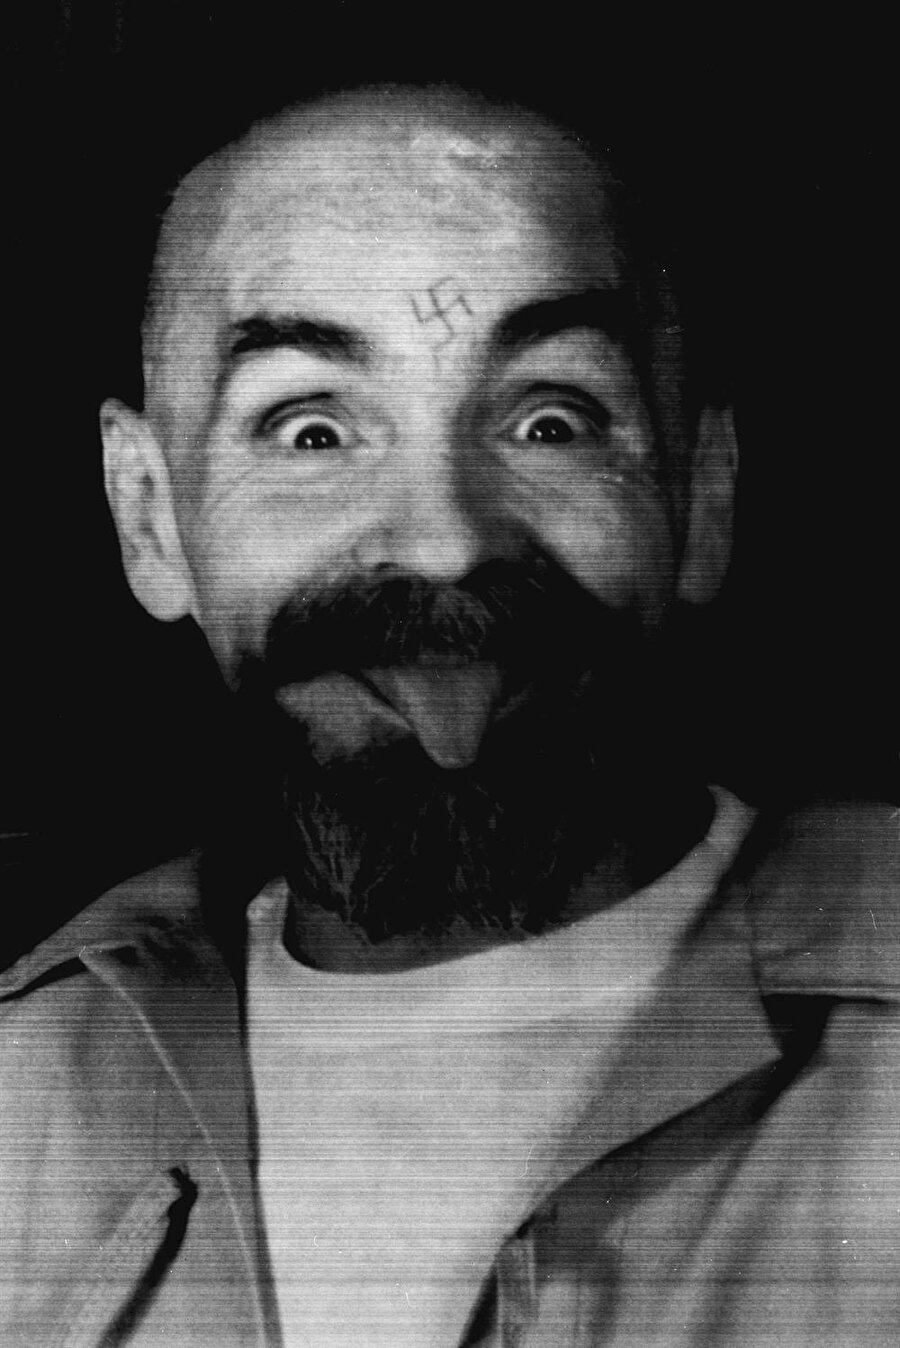 20'nci yüzyılın en sadist seri katili Charles Manson öldü

                                    
                                    Dünyanın en tehlikeli seri katillerinden Charles Manson 83 yaşında öldü. ABD'nin California eyalatinde ömür boyu hapis cezasını çeken seri katil, bir süredir hastanede tedavi görüyordu. Charles Manson, Polonyalı ünlü yönetmen Roman Polanski'nin hamile eşinin de aralarında bulunduğu 9 cinayetten yargılanmıştı.
                                
                                